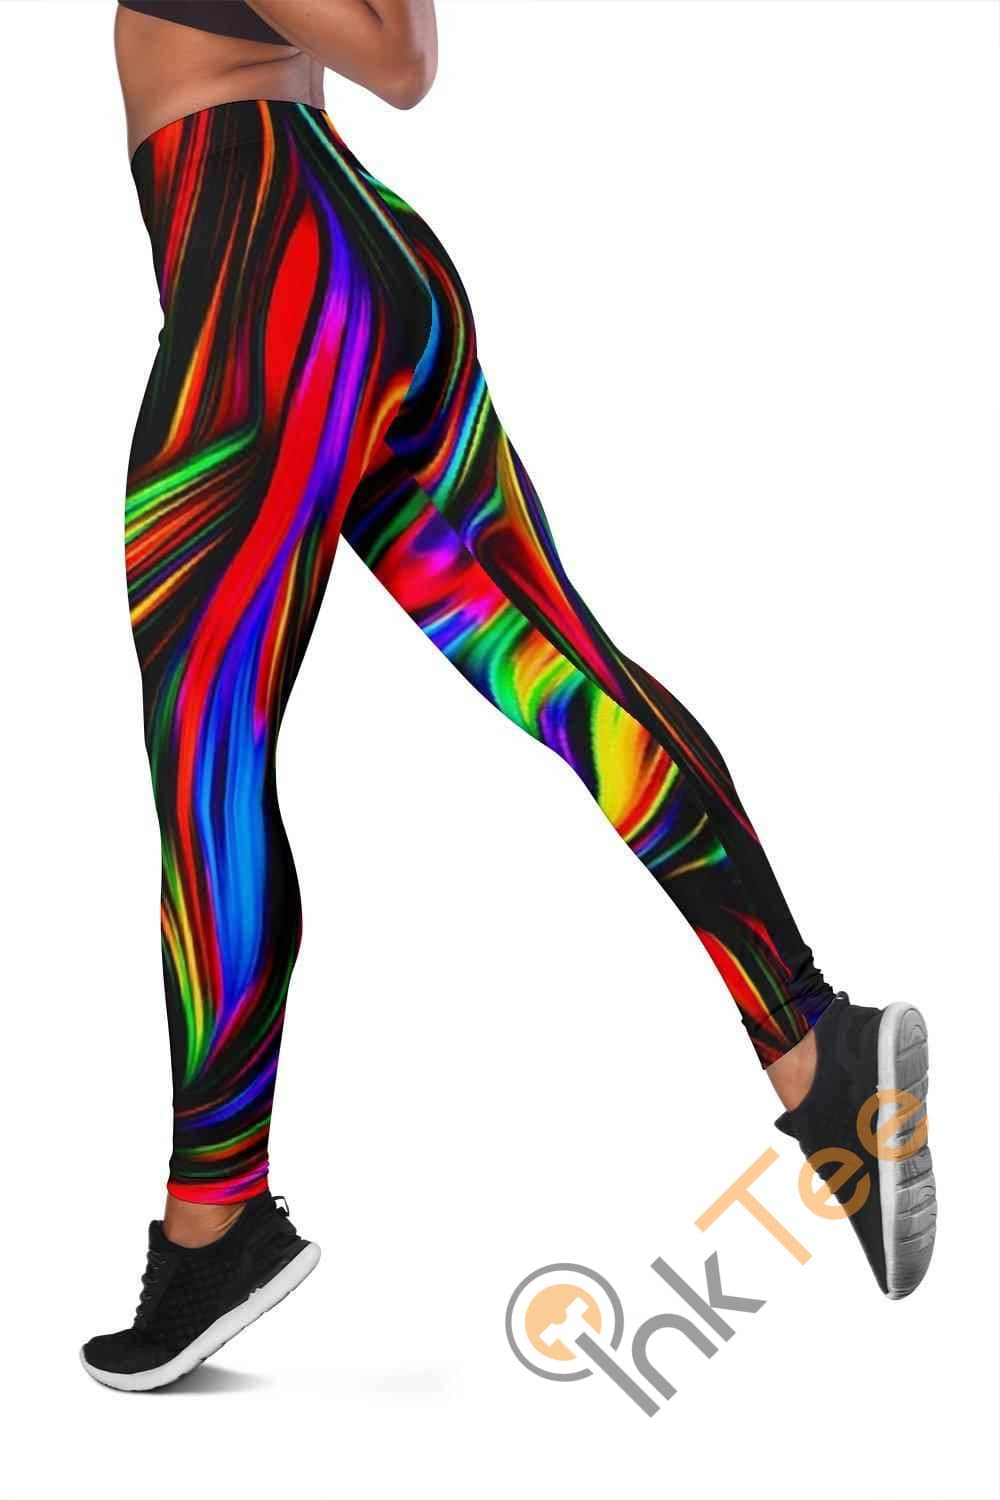 Inktee Store - Fractal Art 3D All Over Print For Yoga Fitness Women'S Leggings Image